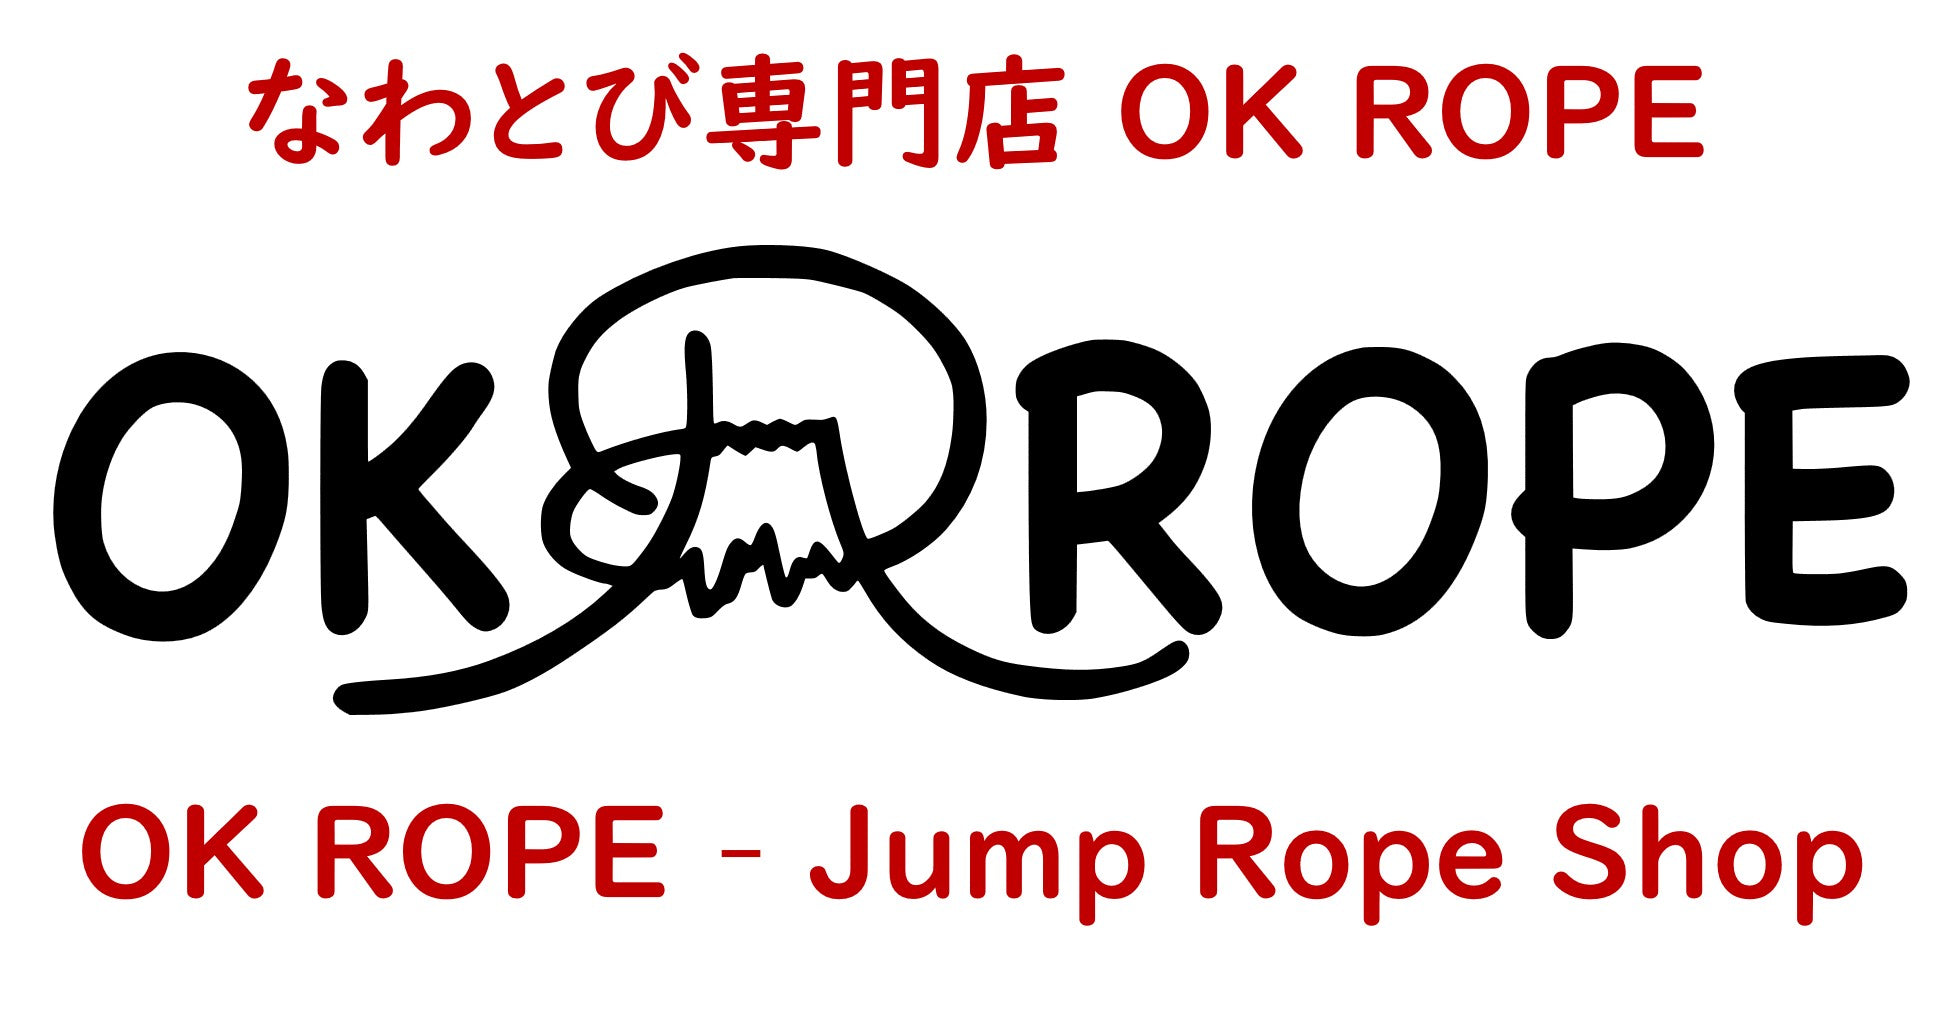 商品 – OK ROPE なわとび専門店 Jump Rope Shop